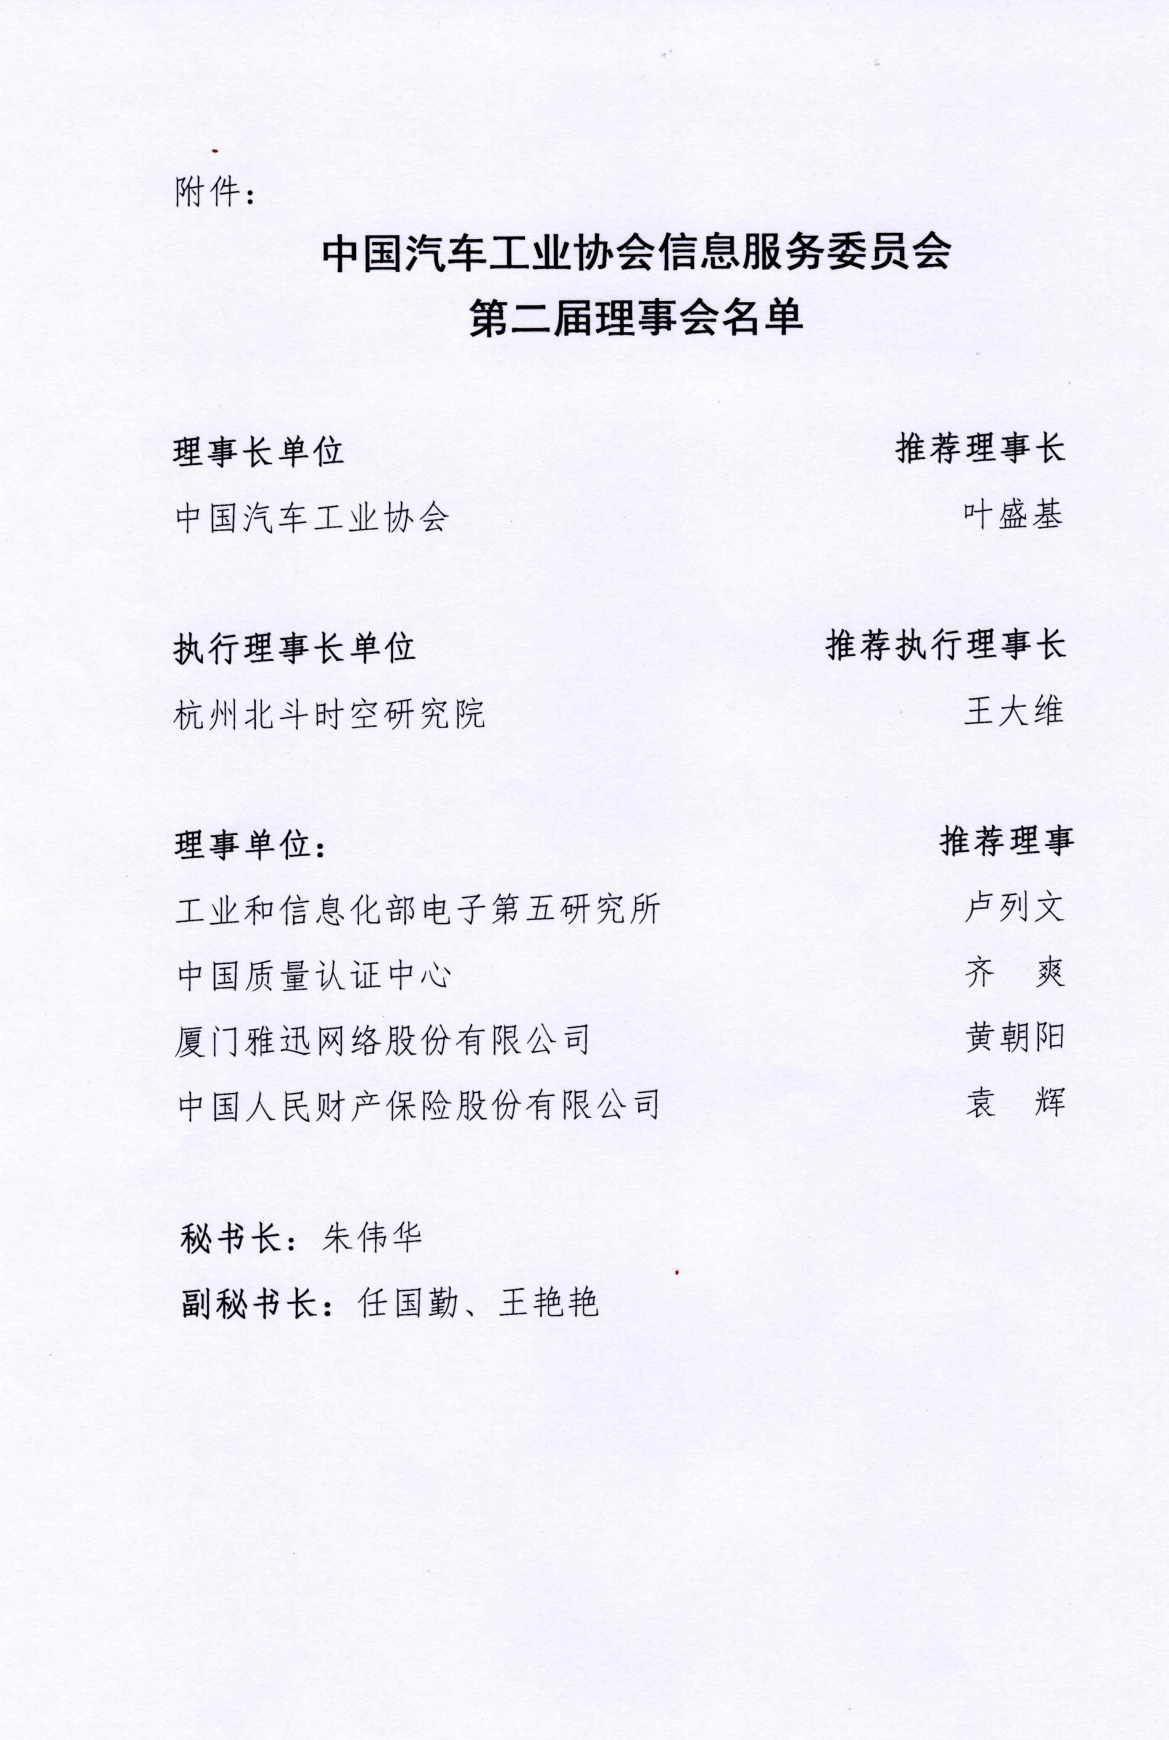 关于同意中国汽车工业协会信息服务委员会第二届理事会换届结果的批复_02.png